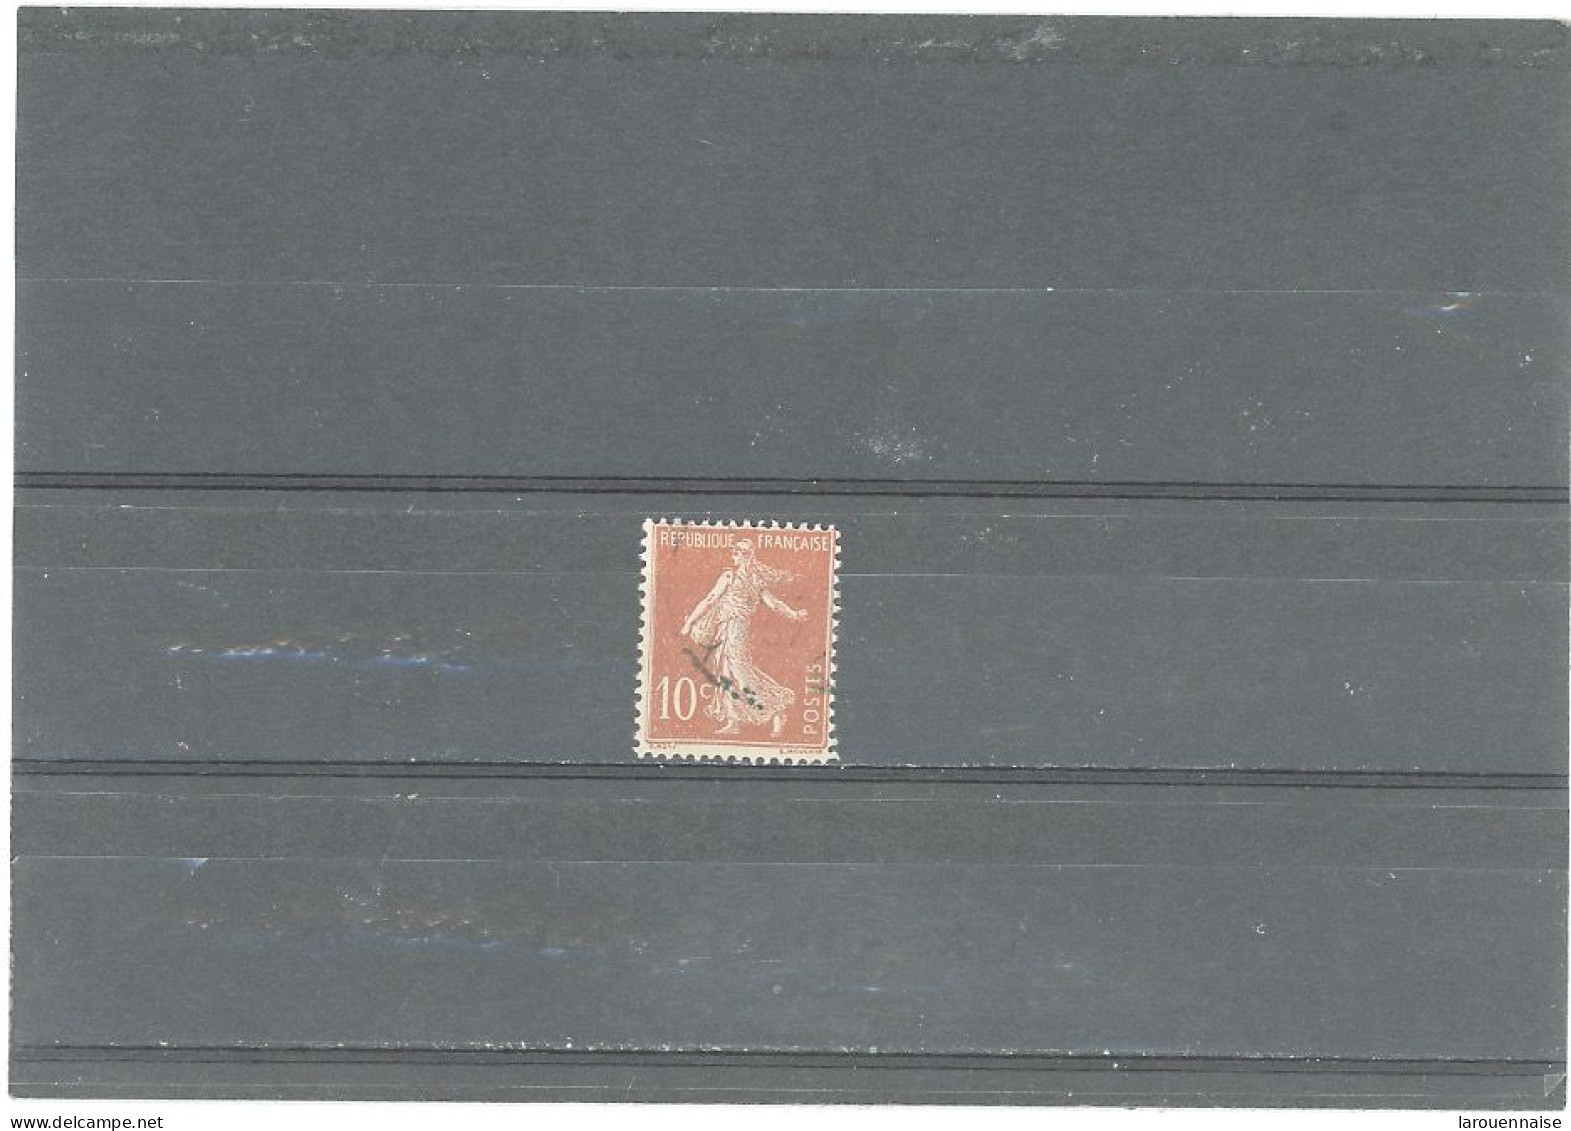 VARIÉTÉS -N°135 -Obl SEMEUSE CAMÉE -10c ROUGE -CHIFFRES MAIGRES- TACHE ROUGE EN HAUT DU BRAS GAUCHE - Used Stamps